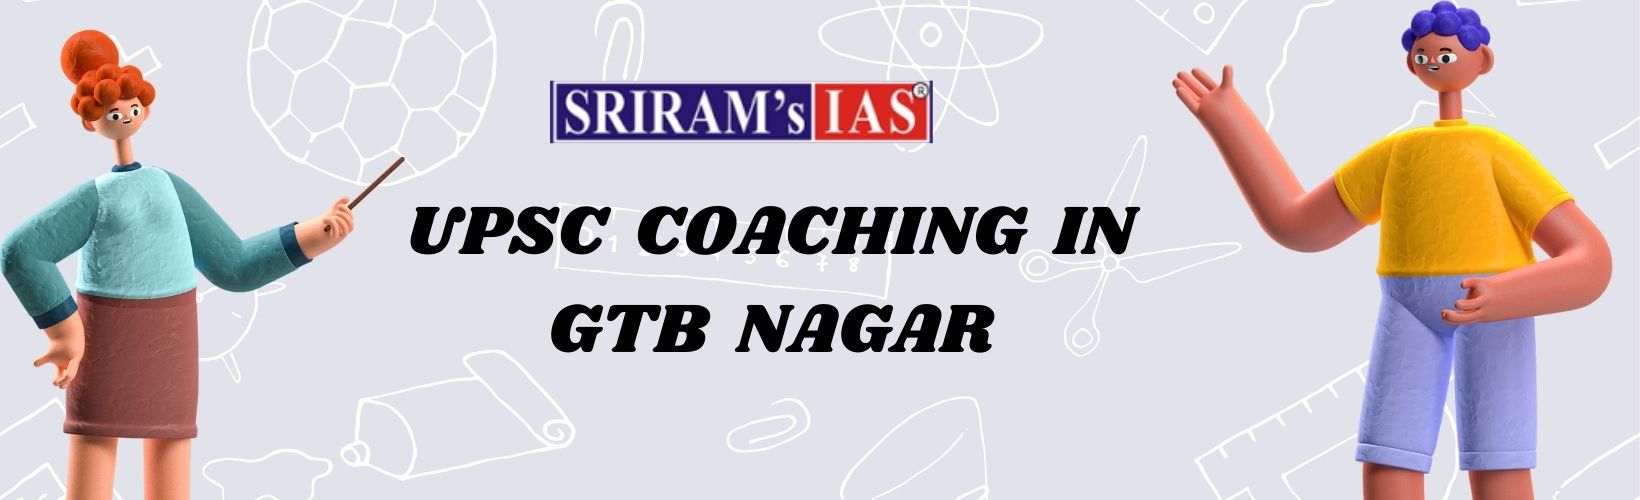 UPSC Coaching in GTB Nagar